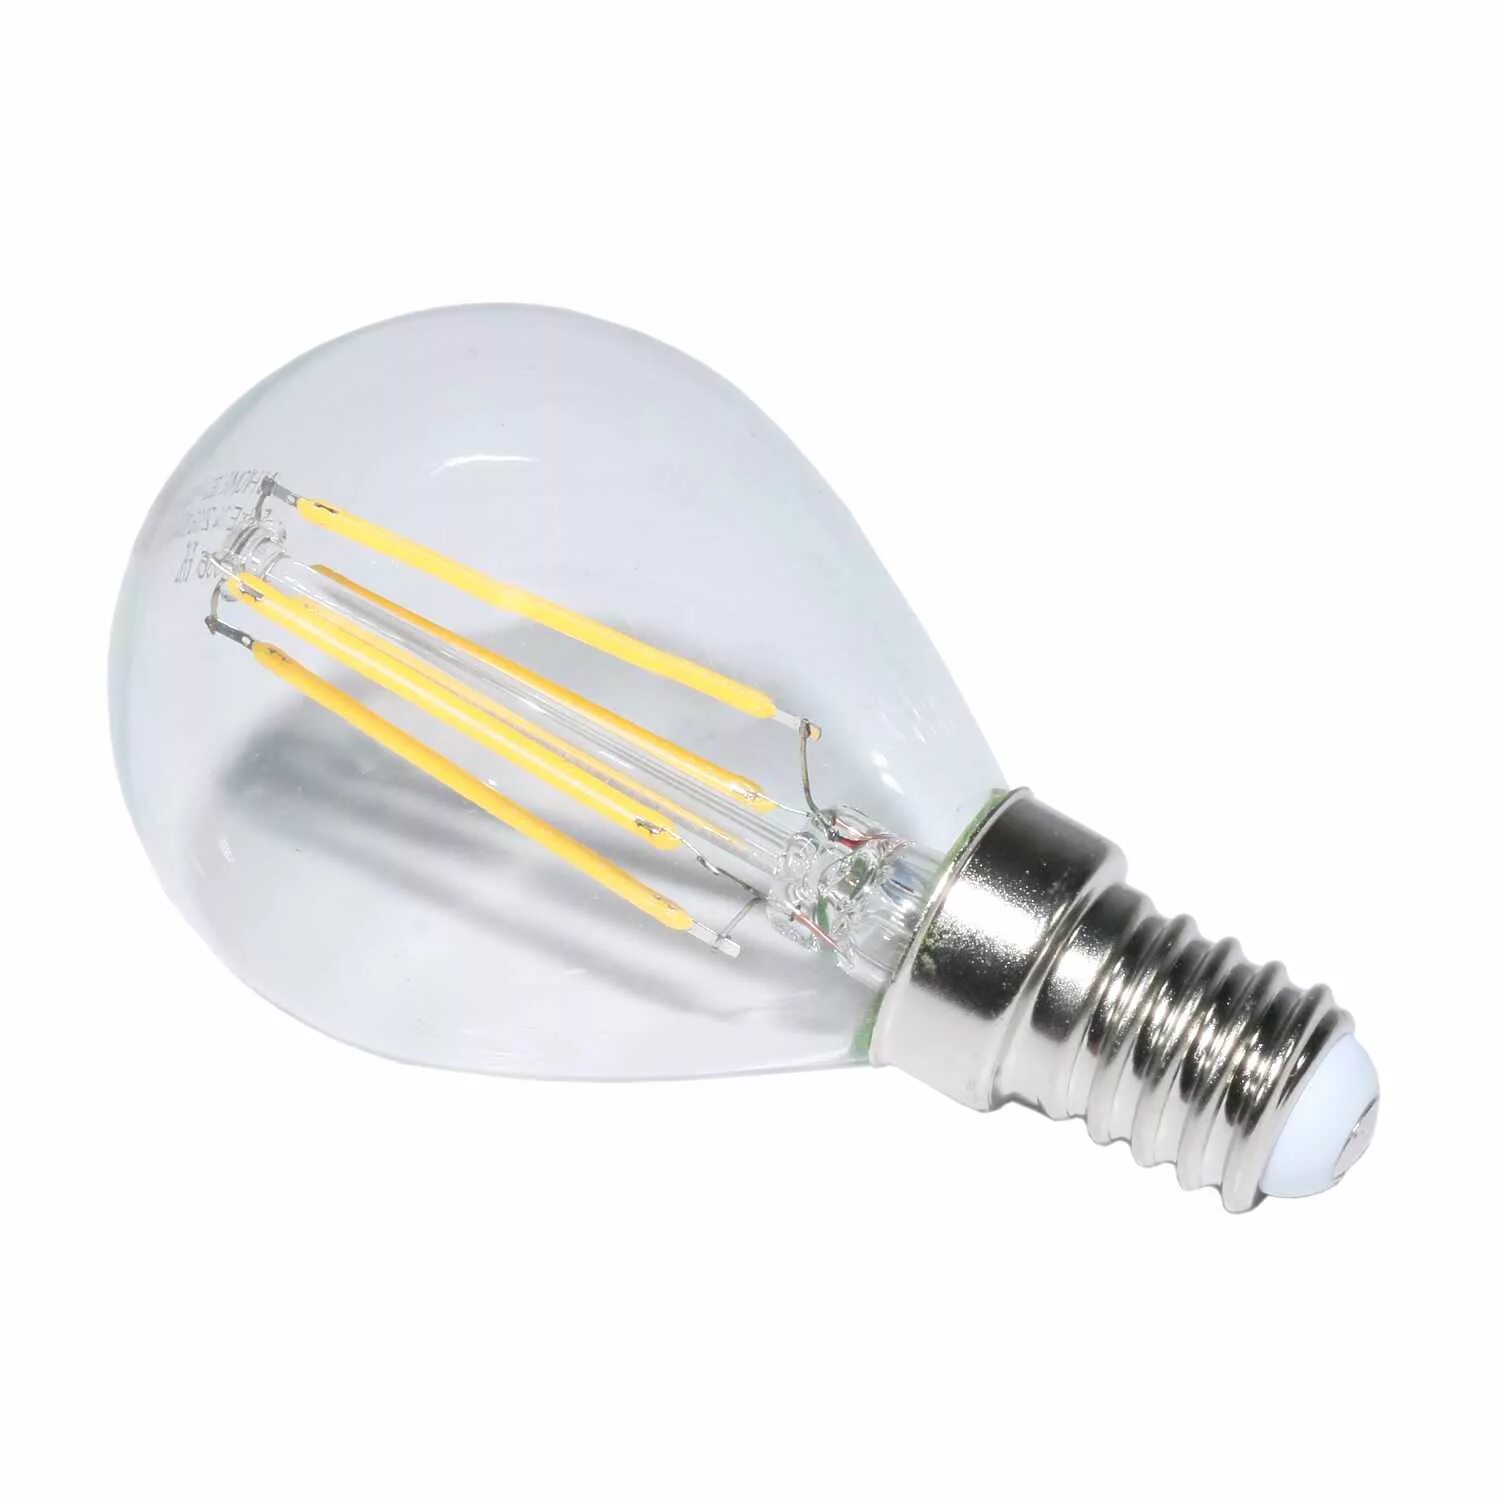 E14 led шар. Светодиодная лампа е14 15 Вт. Светодиодная лампа 5вт с цоколем е14. ASD led-шар e14 3.5 Вт 3000к. Лампочки цоколь е14 светодиодные.